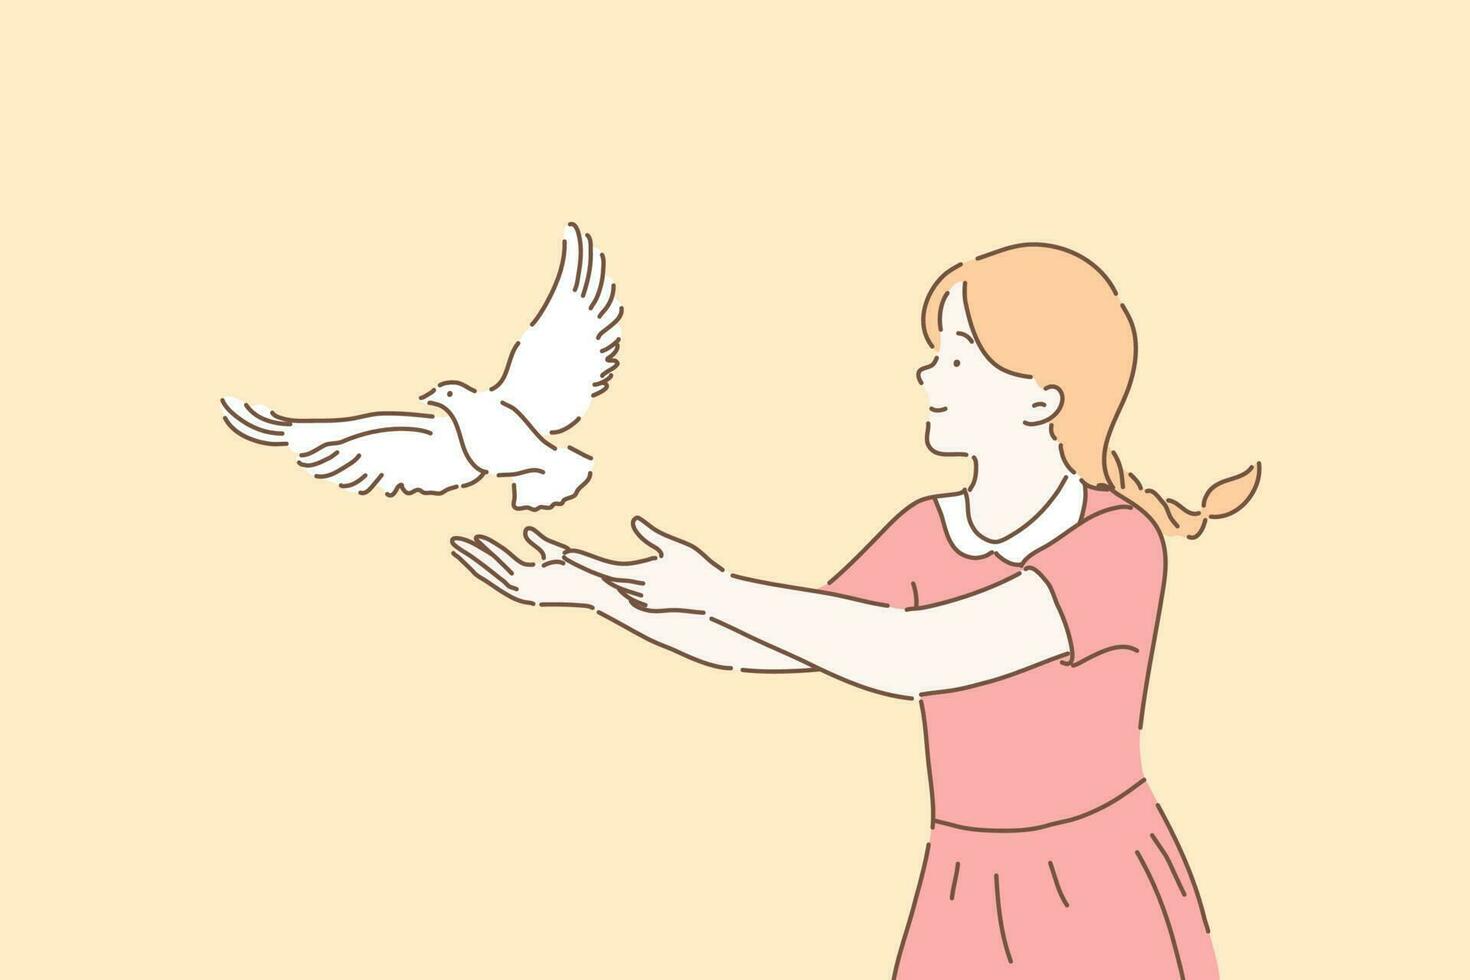 paz símbolo, libertad metáfora concepto. niña dejando Vamos blanco paloma, linda niño ajuste gratis Paloma con abierto brazos gesto, hembra voluntario tomando cuidado de aves. sencillo plano vector